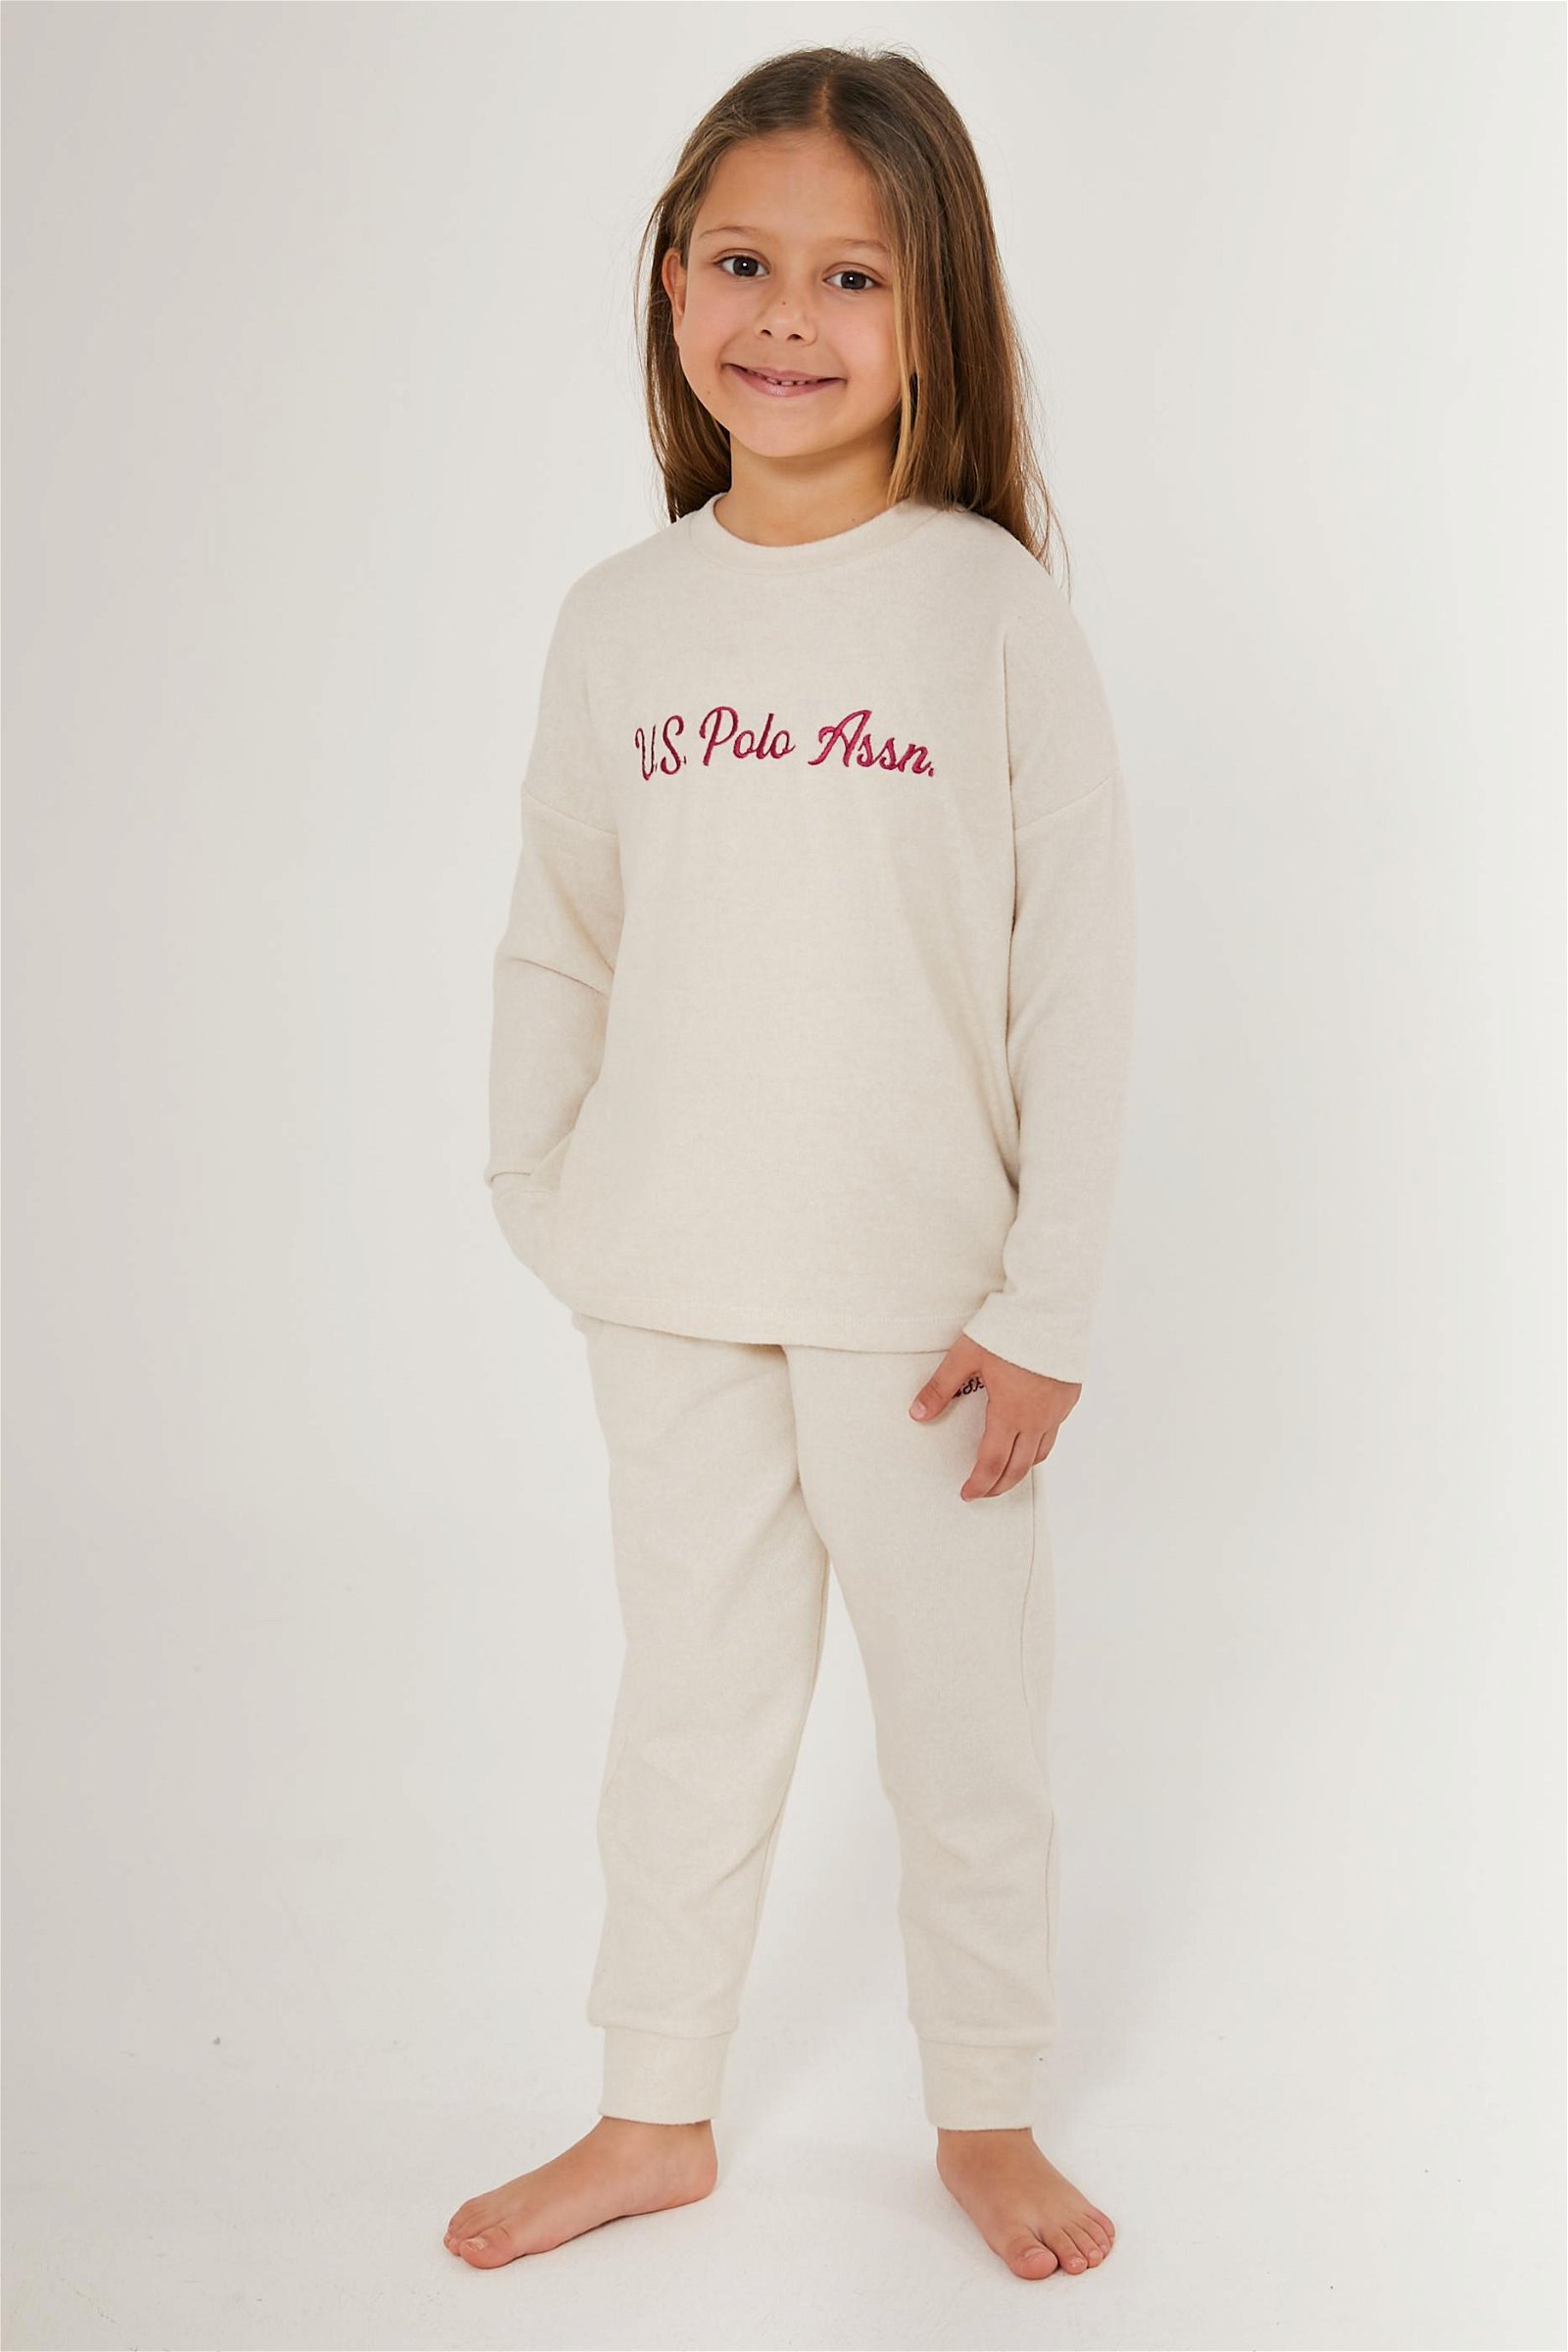 Kız Çocuk Krem Pijama Takımı